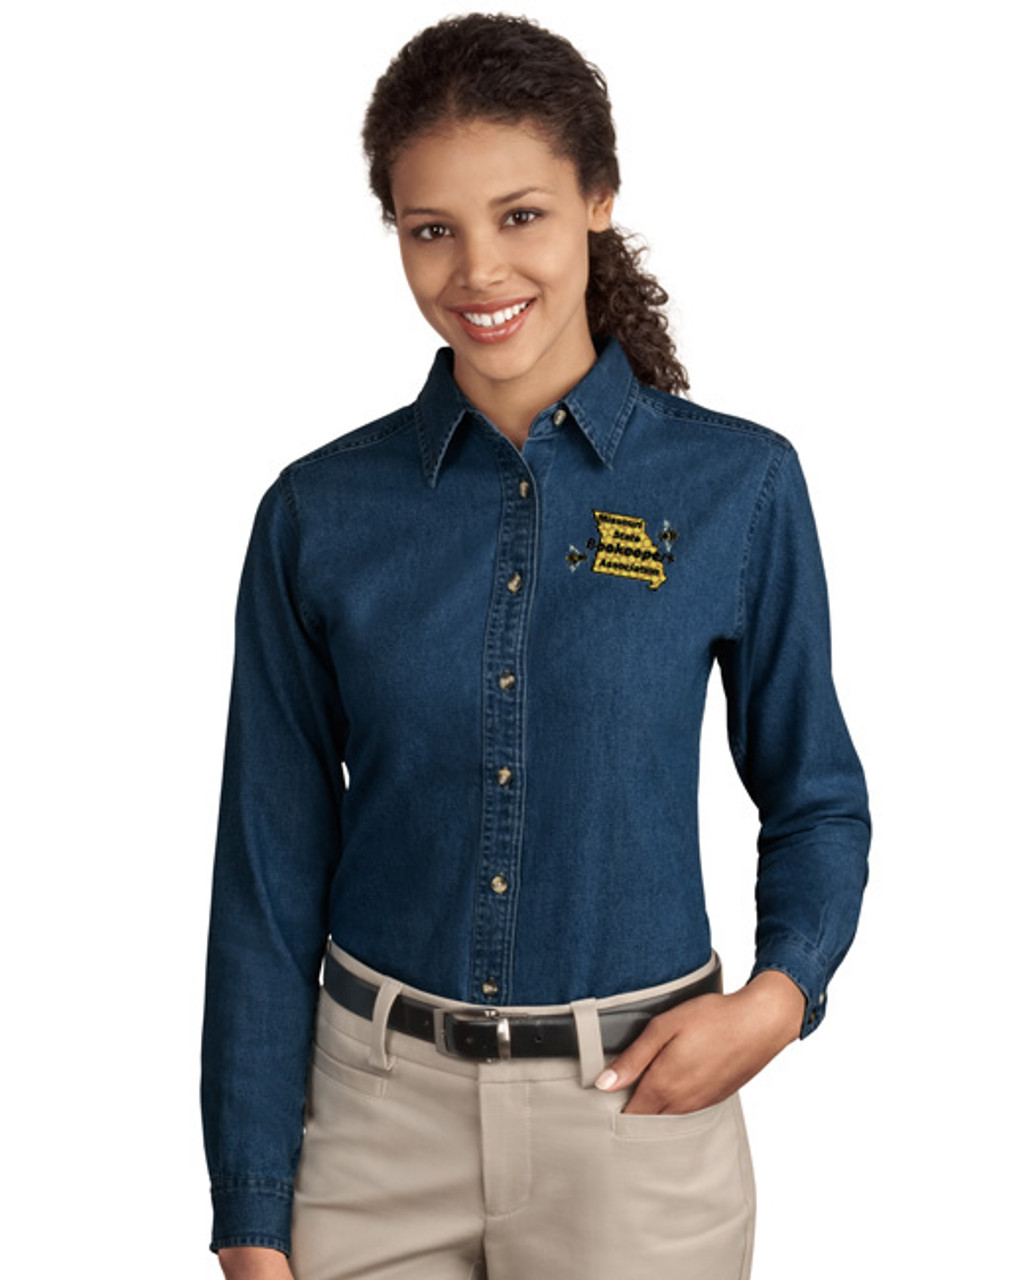 Long Sleeve Monogram Shirt for Women Monogrammed Pocket Long